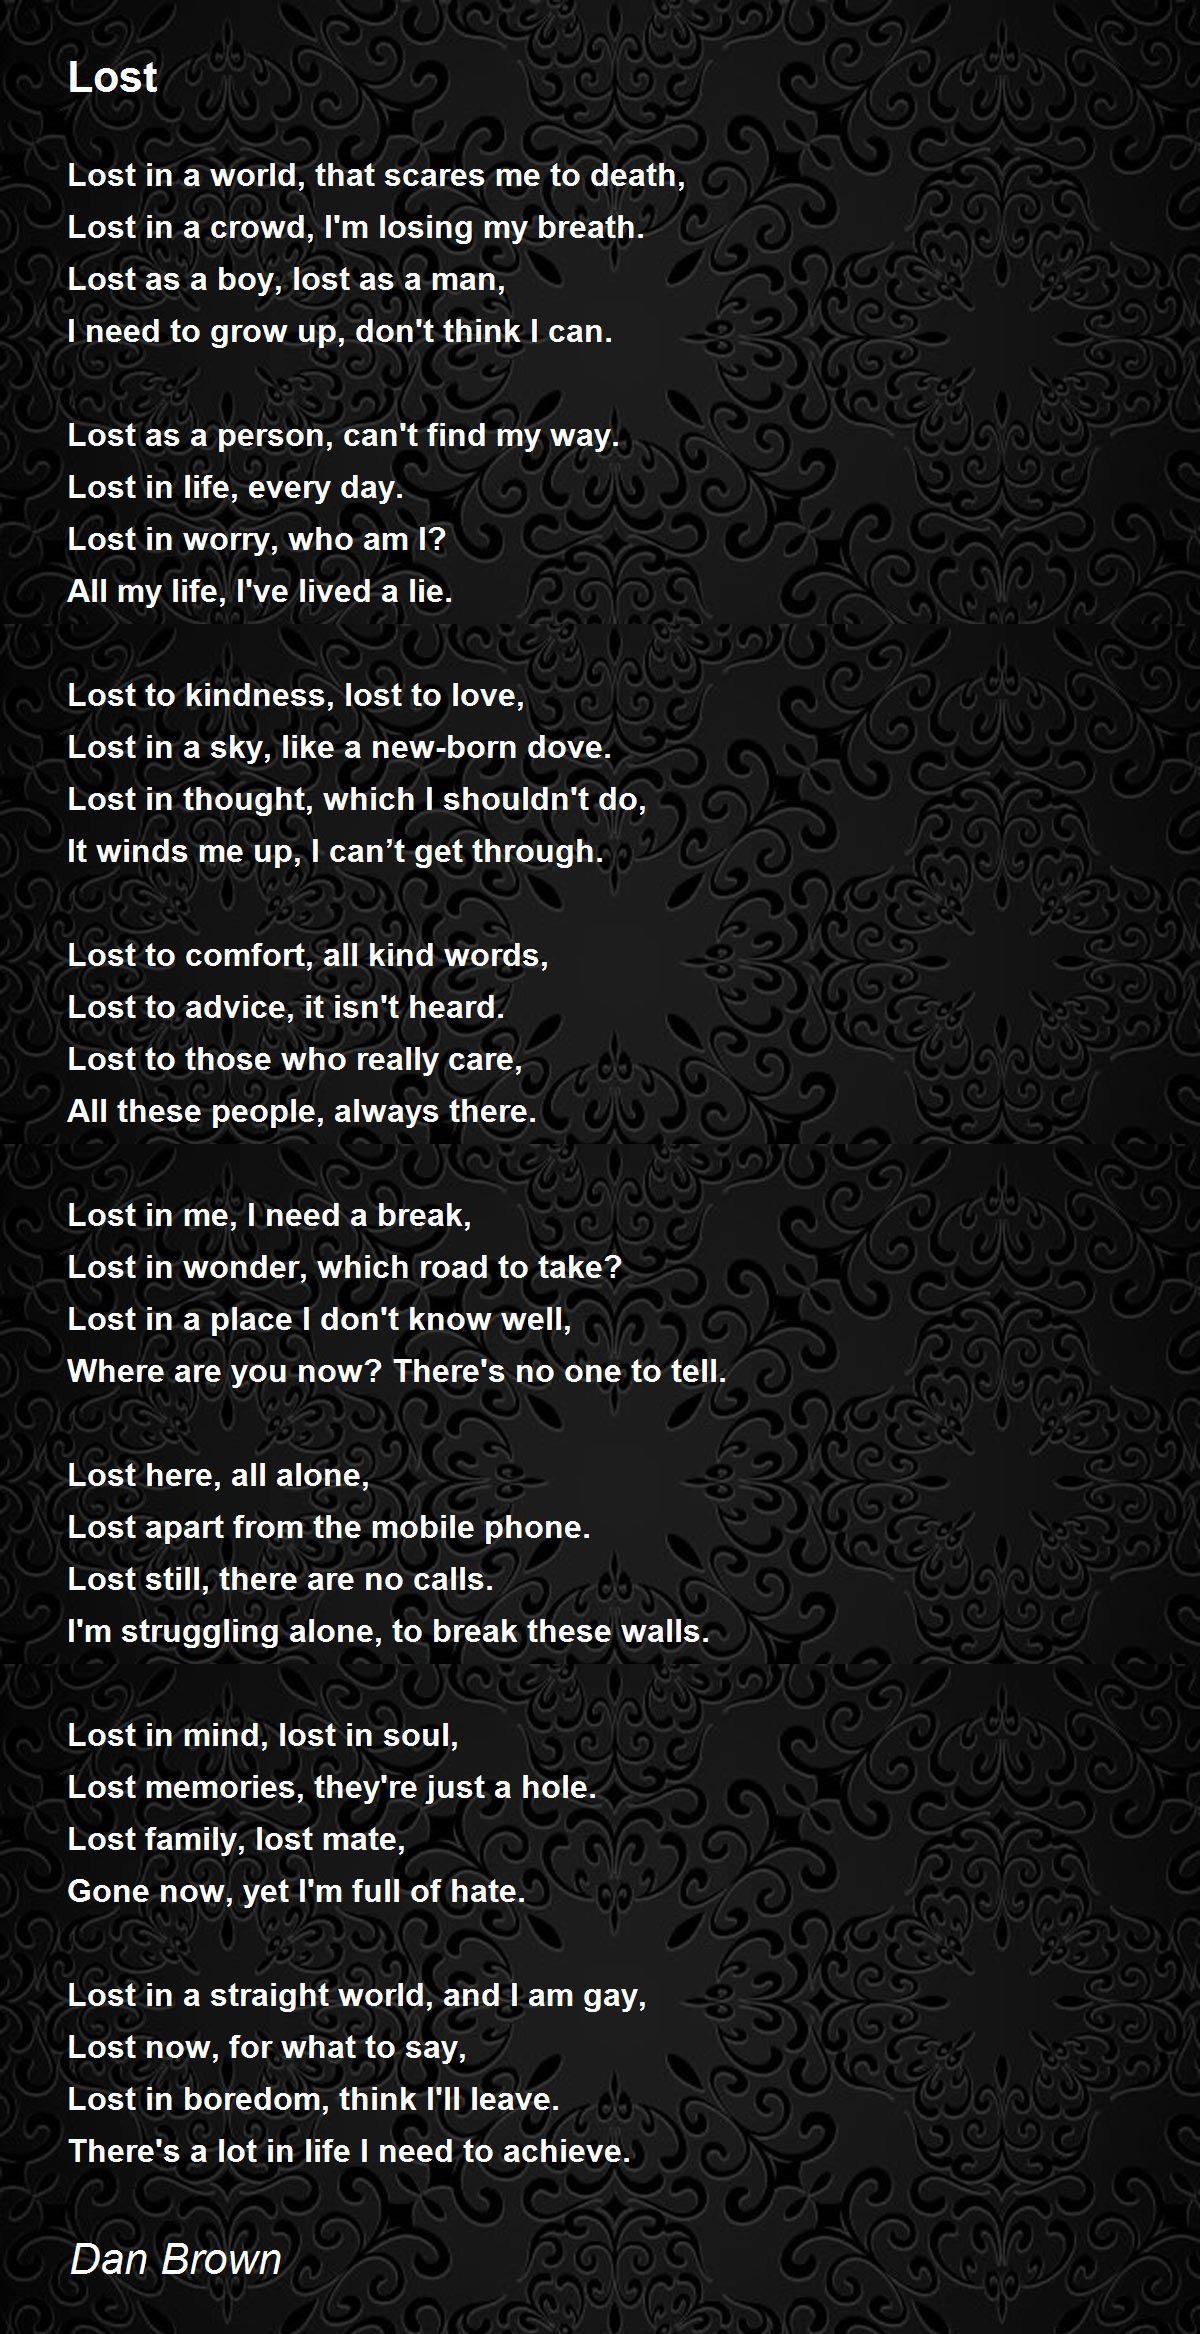 Lost - Lost Poem by Dan Brown